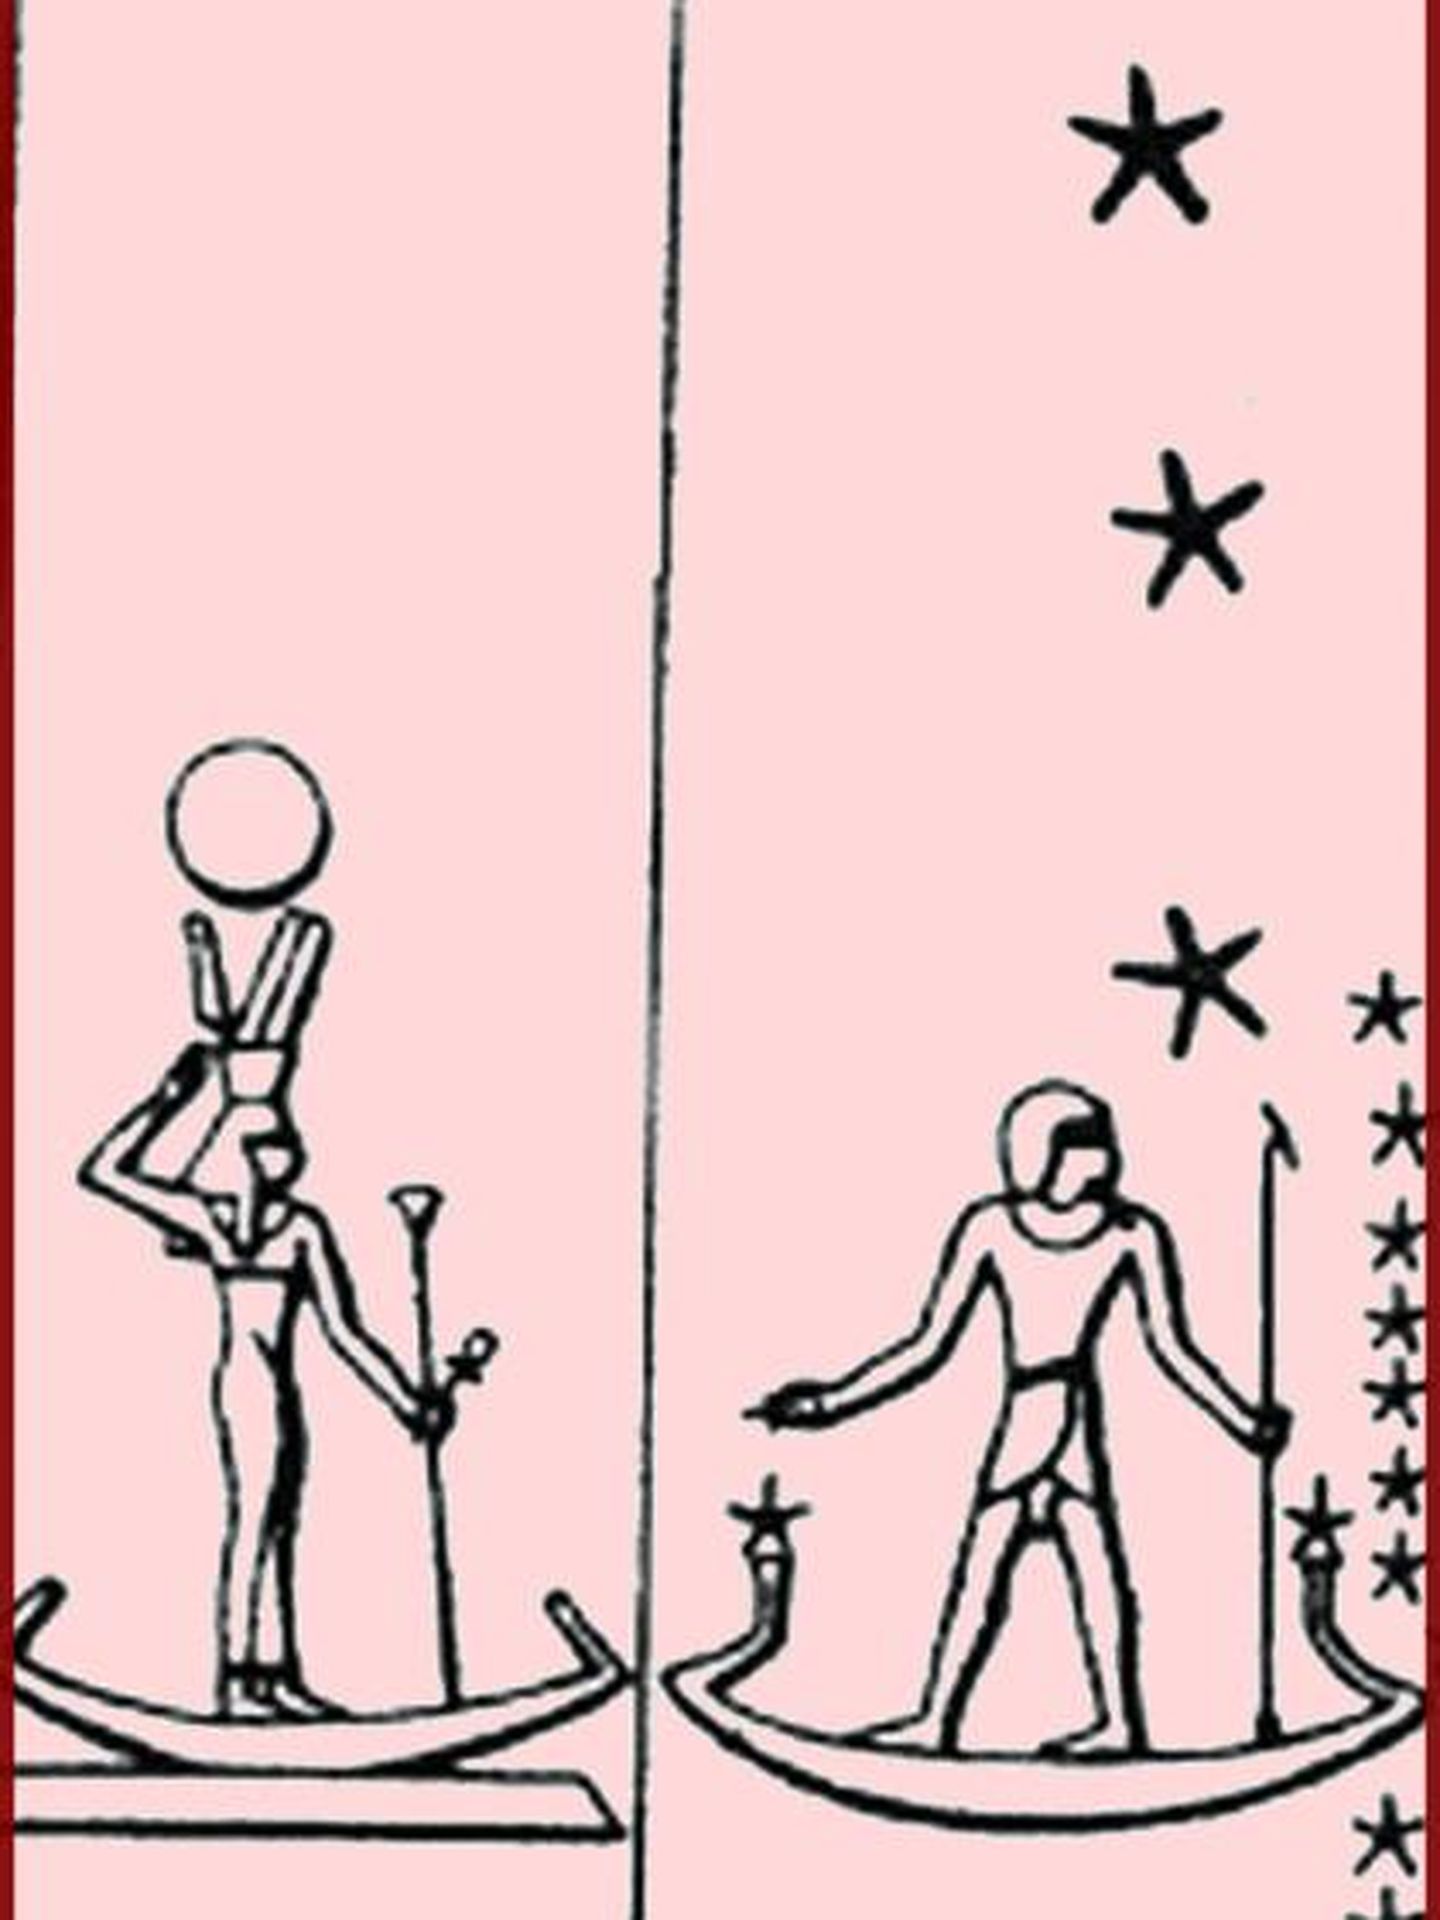 Figuras de Sepdet (Sirius) y Sah (Cinturón de Orion) representados en la tumba de Senenmut, en Tebas. (CC/Dageno)